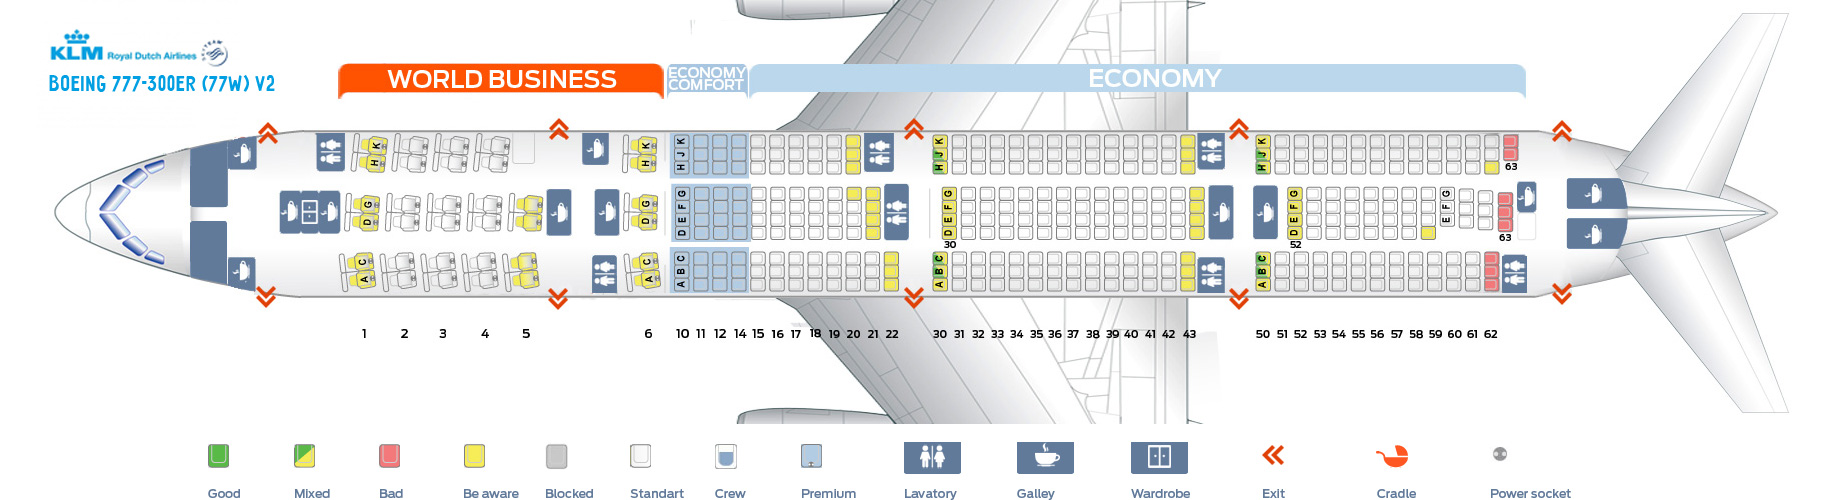 seat plan air china boeing 777 300er